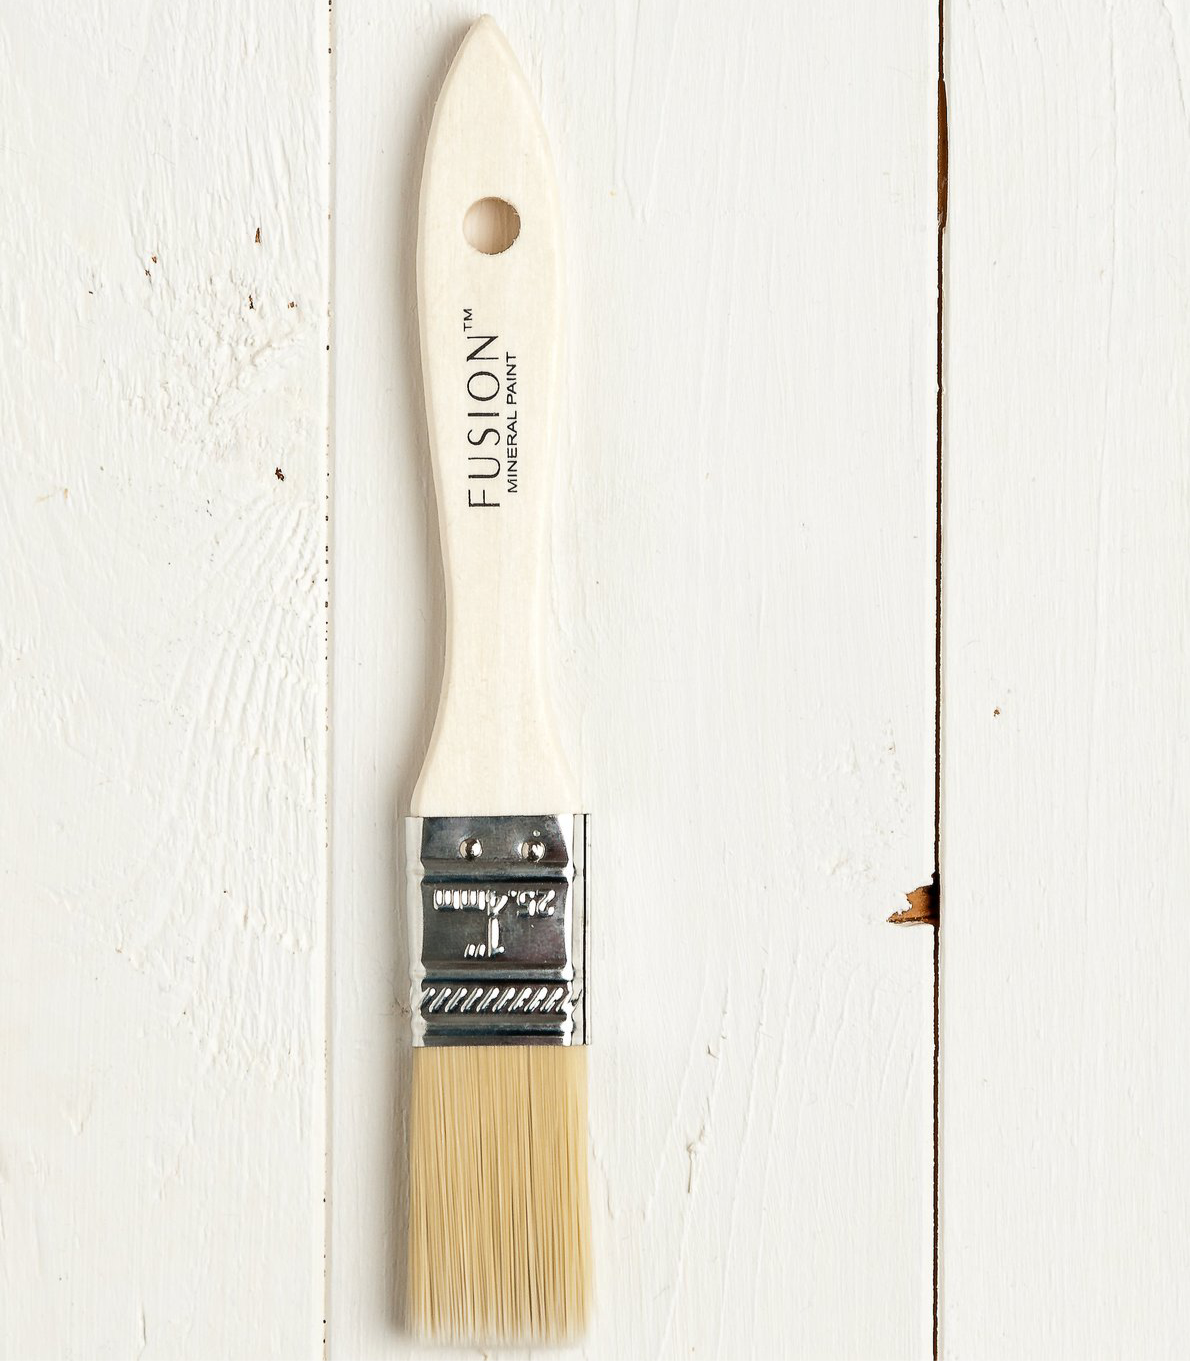 1-Inch Paint Brush